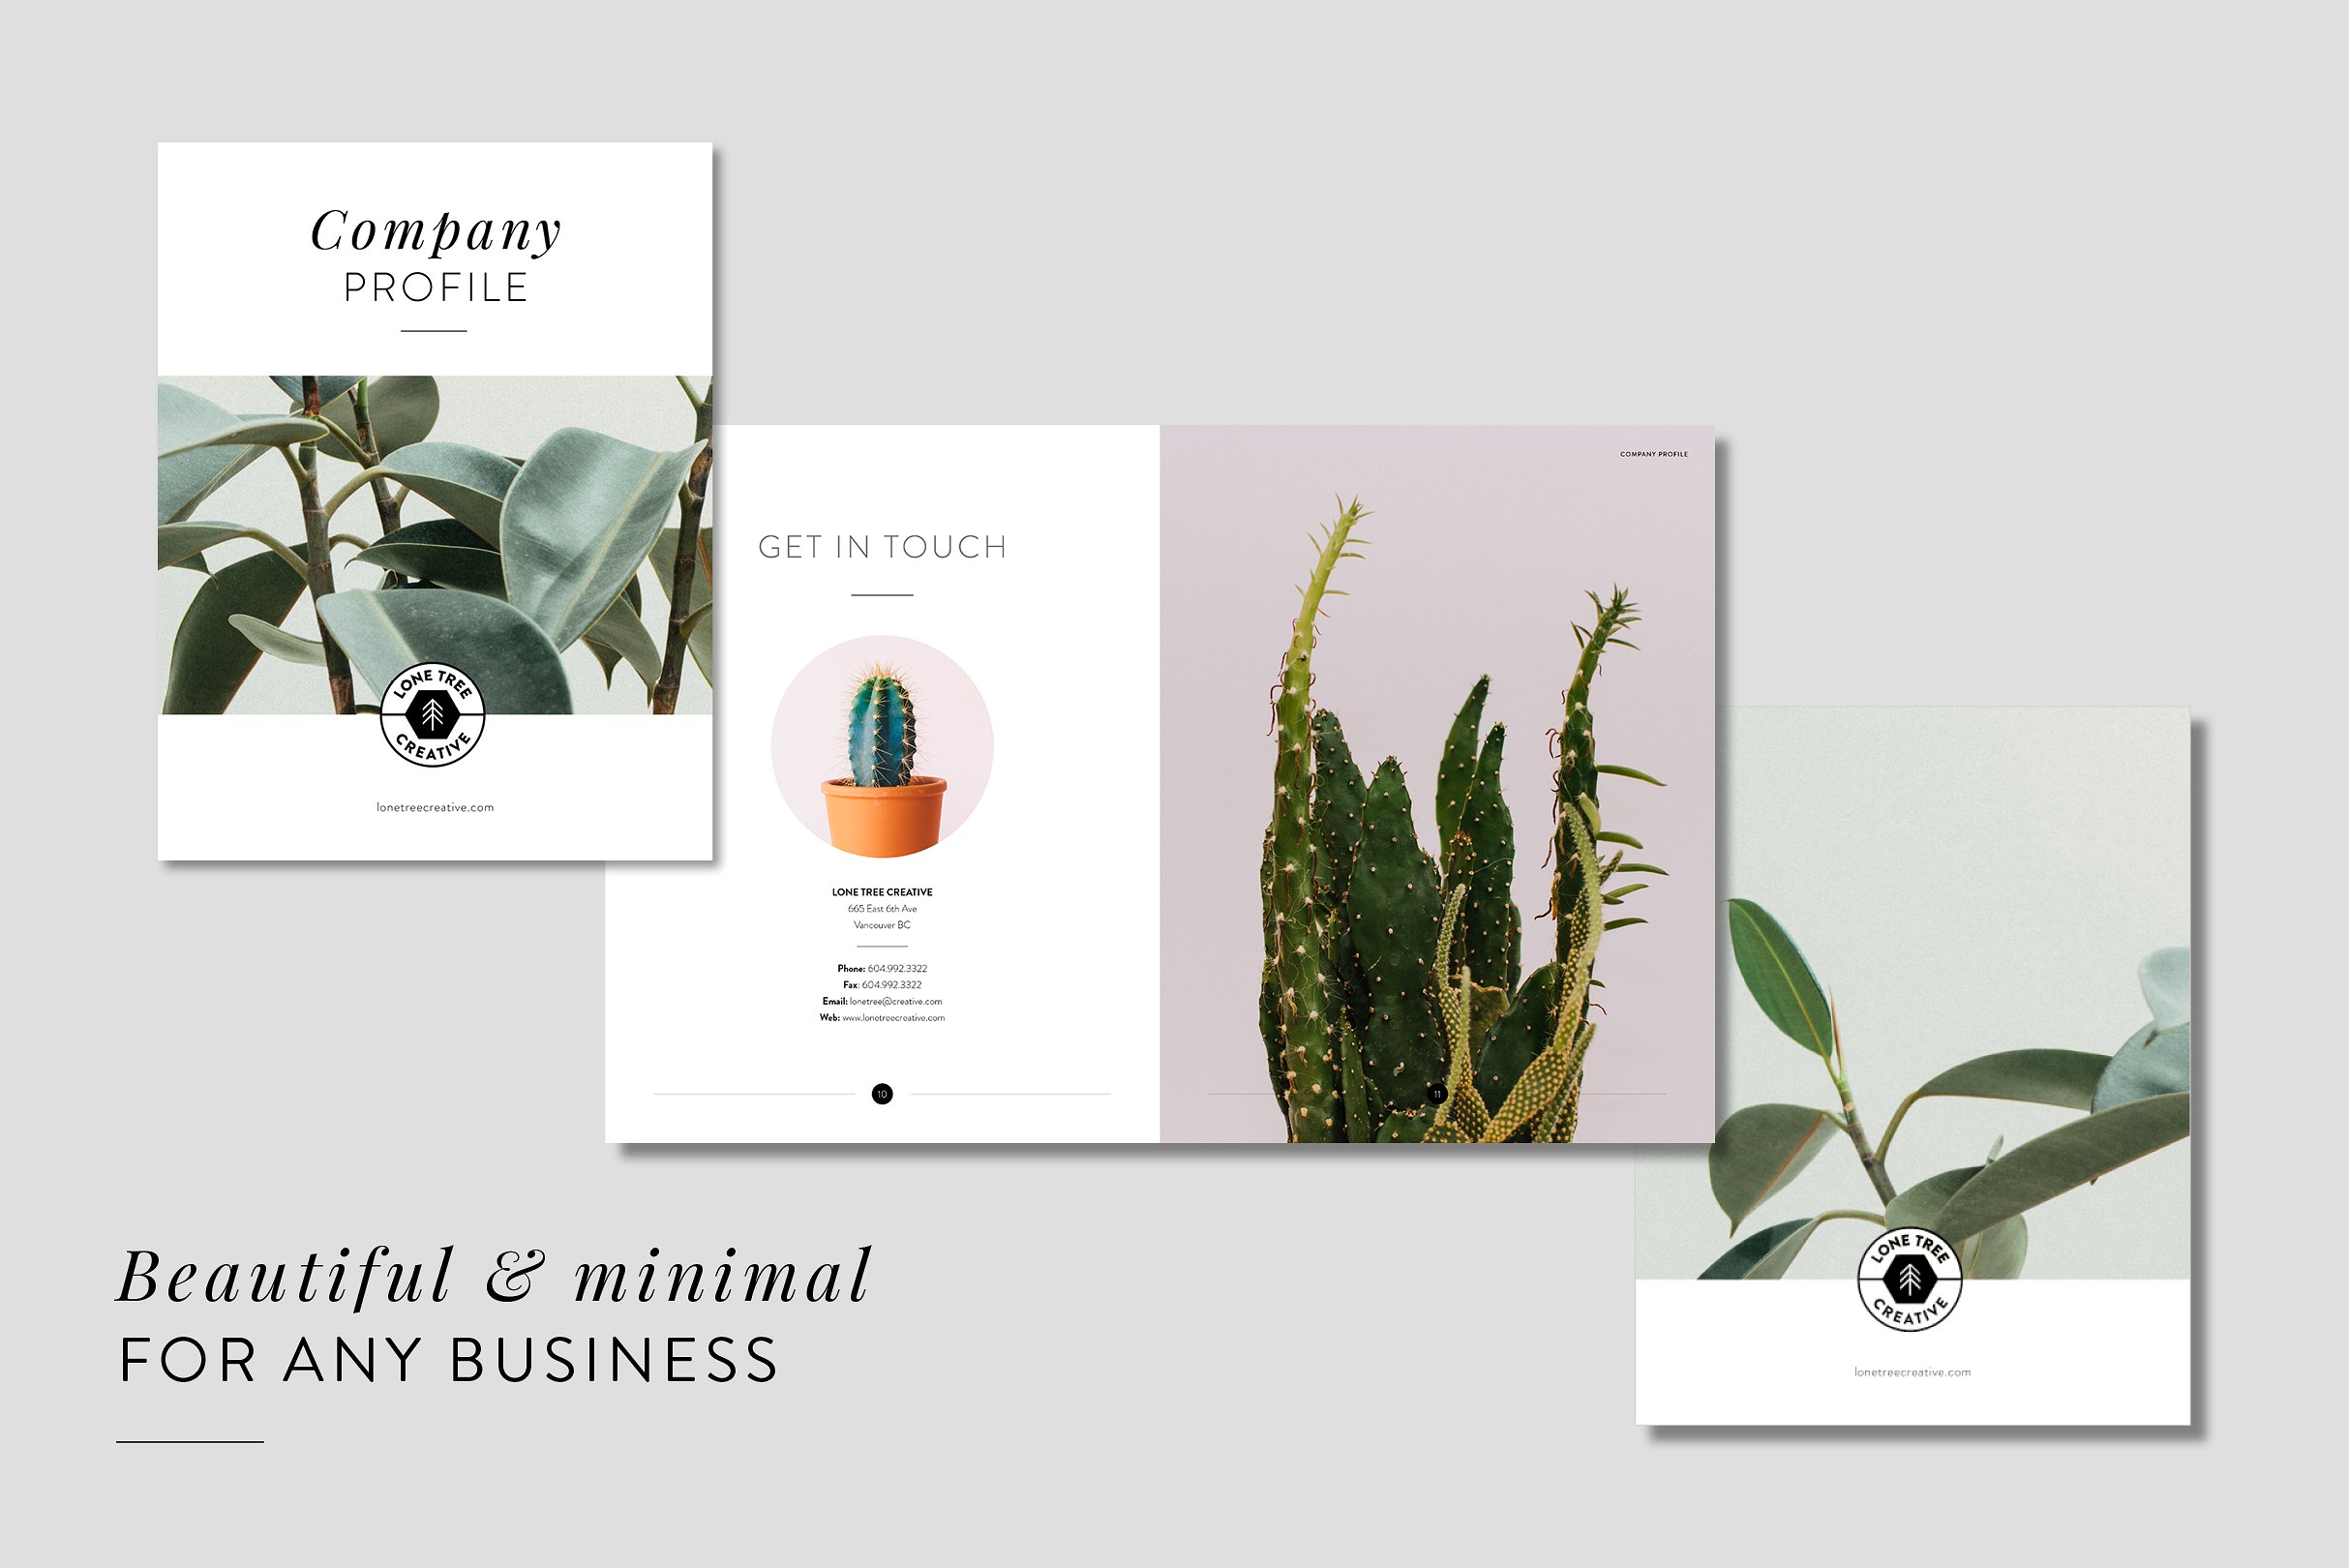 时尚专业的公司宣传画册模板 Minimal Company Profile + Brochure [indd]插图(4)